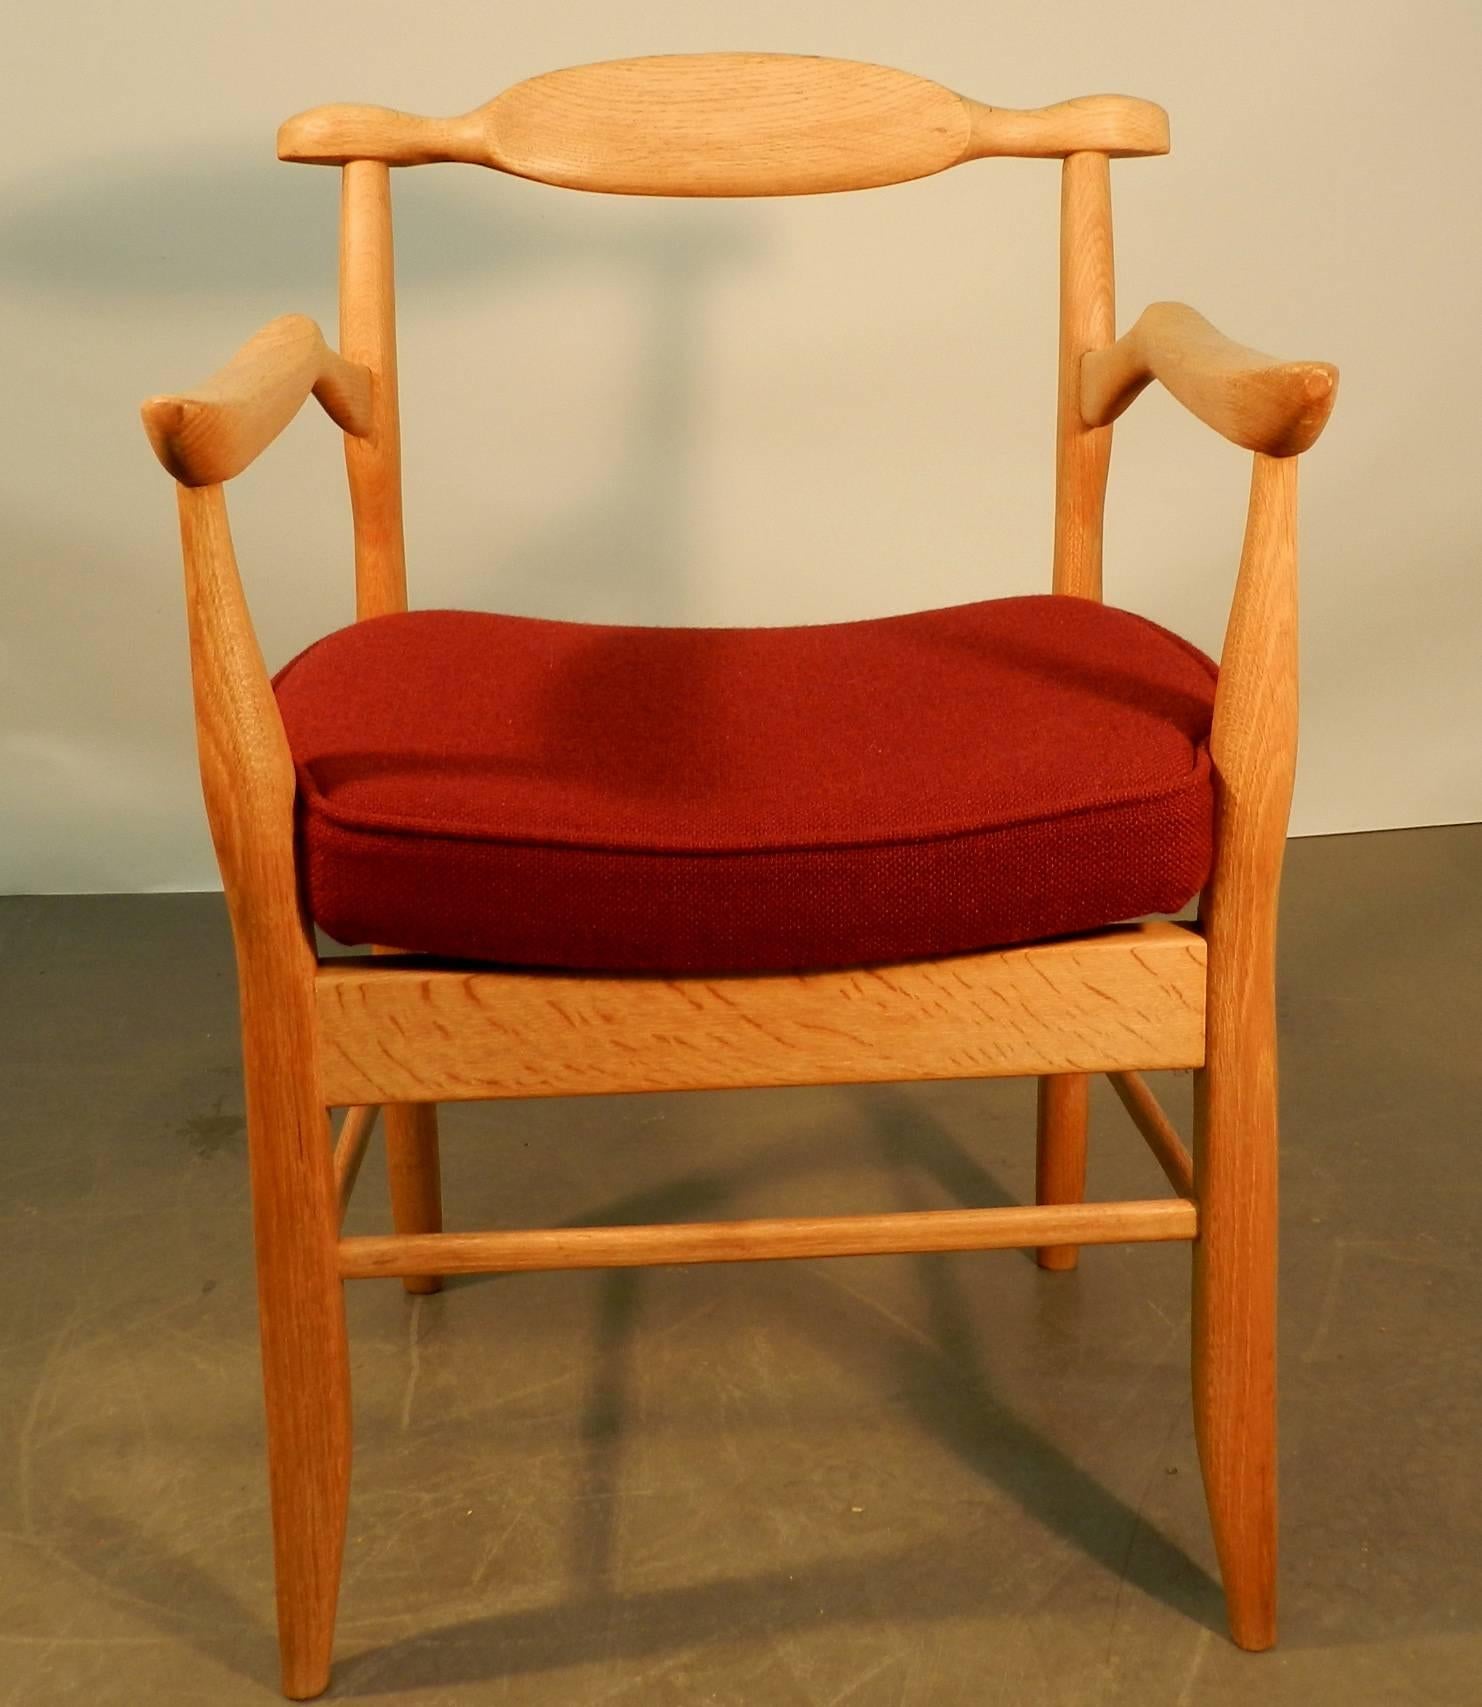 Guillerme et Chambron, Satz von sechs Sesseln aus Eichenholz, Modell Fumay. Edition Votre Maison, um 1960.
Vollständig restauriert, mit neuen Wollbezügen.
Es besteht die Möglichkeit, weitere 